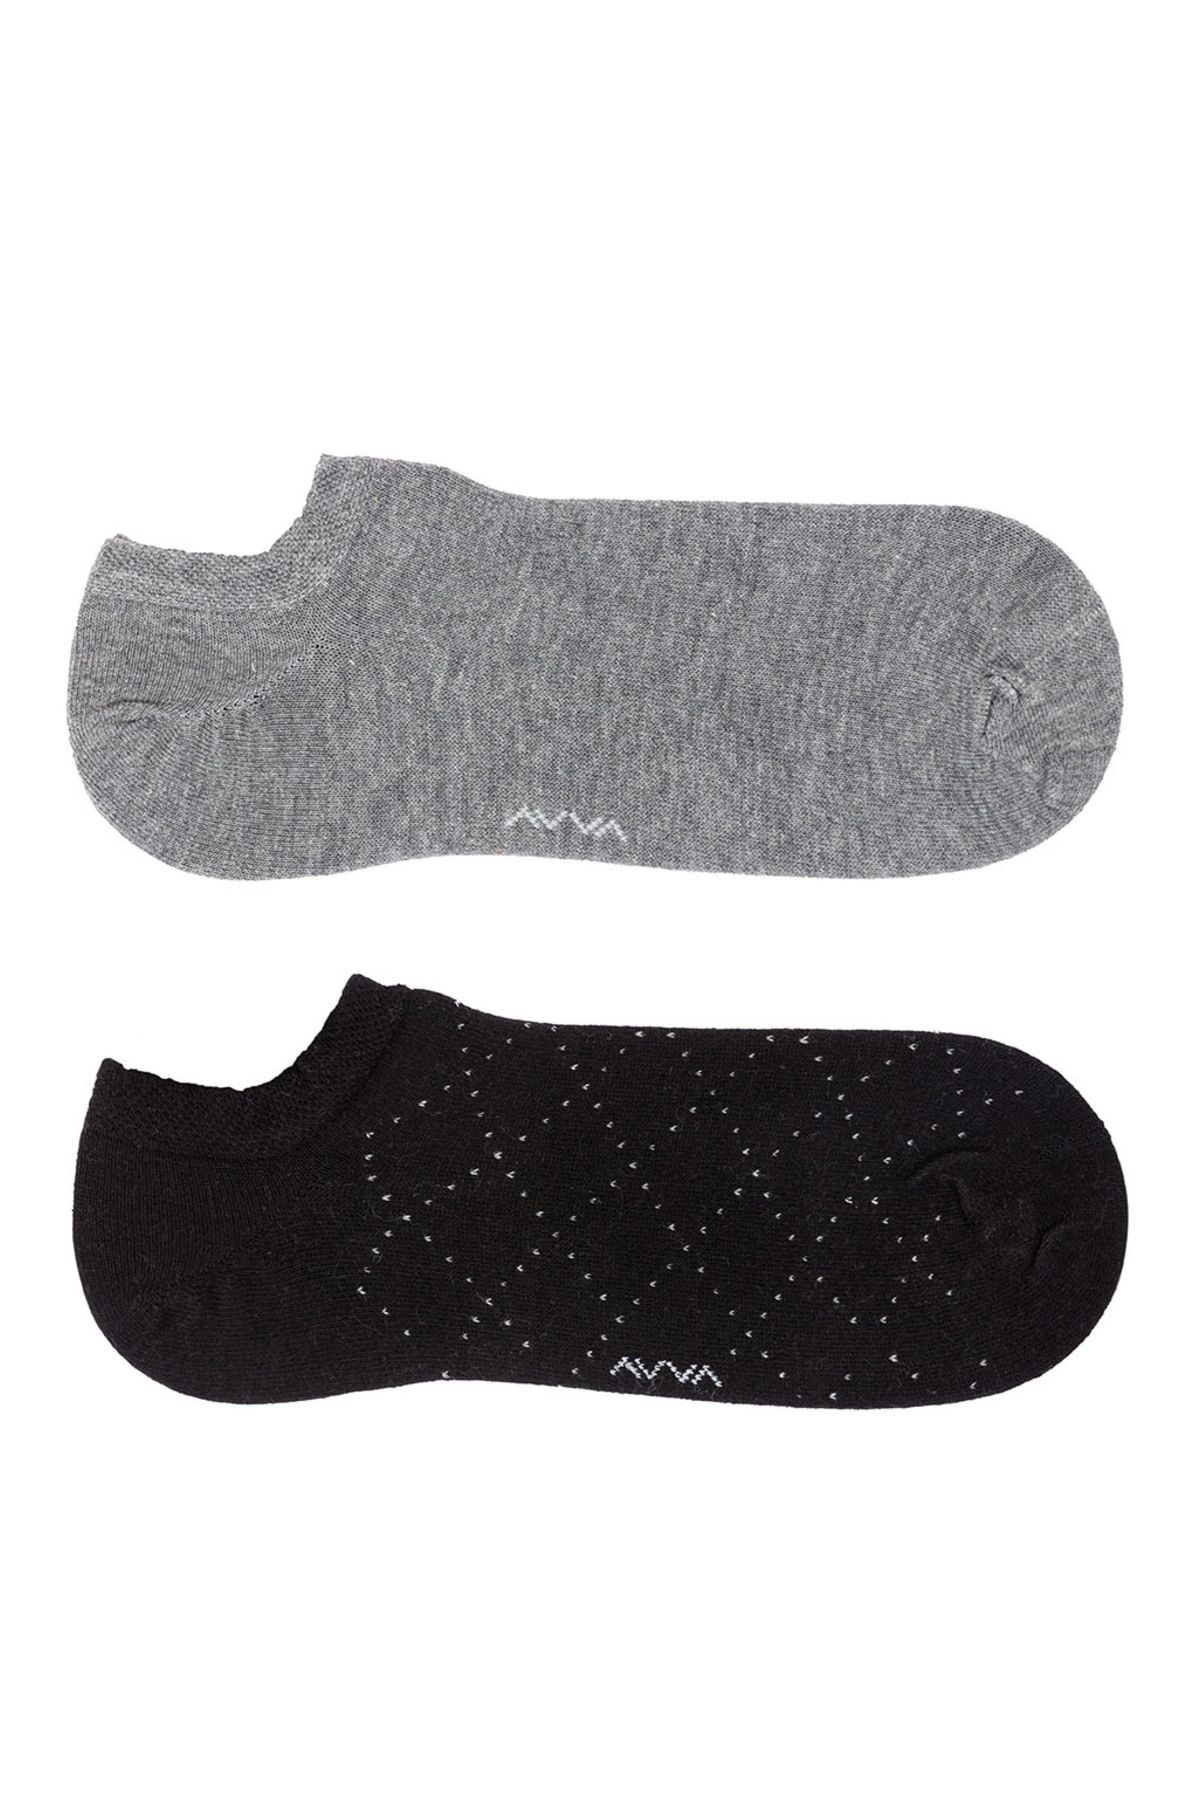 Avva Siyah 2'li Patik Çorap